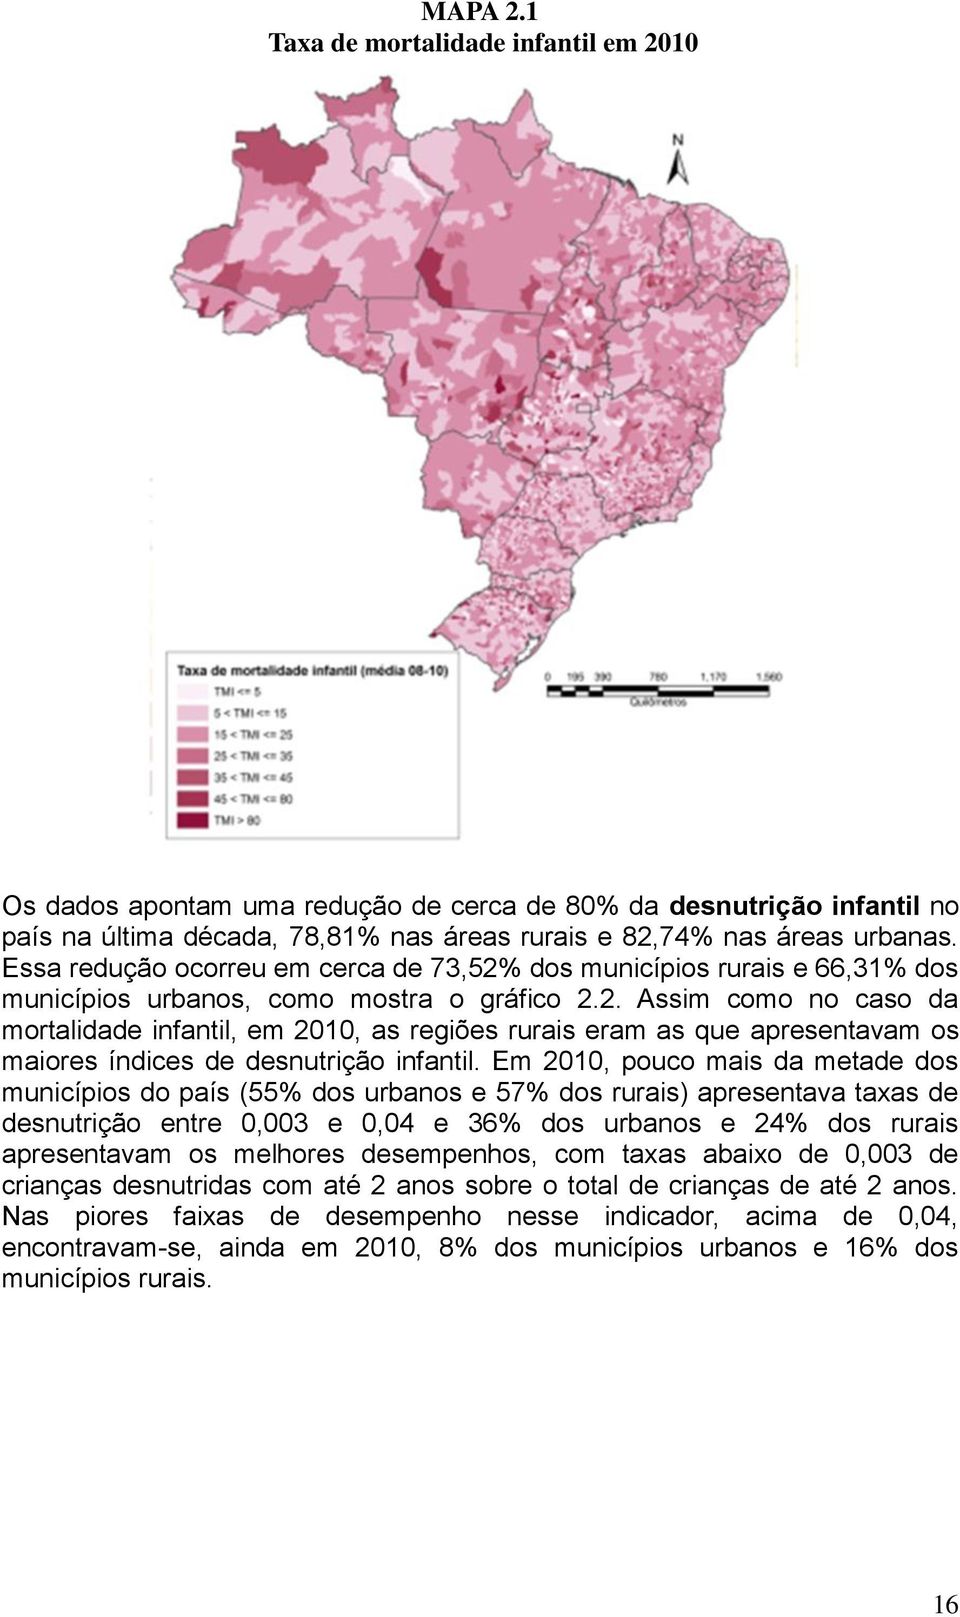 Em 2010, pouco mais da metade dos municípios do país (55% dos urbanos e 57% dos rurais) apresentava taxas de desnutrição entre 0,003 e 0,04 e 36% dos urbanos e 24% dos rurais apresentavam os melhores